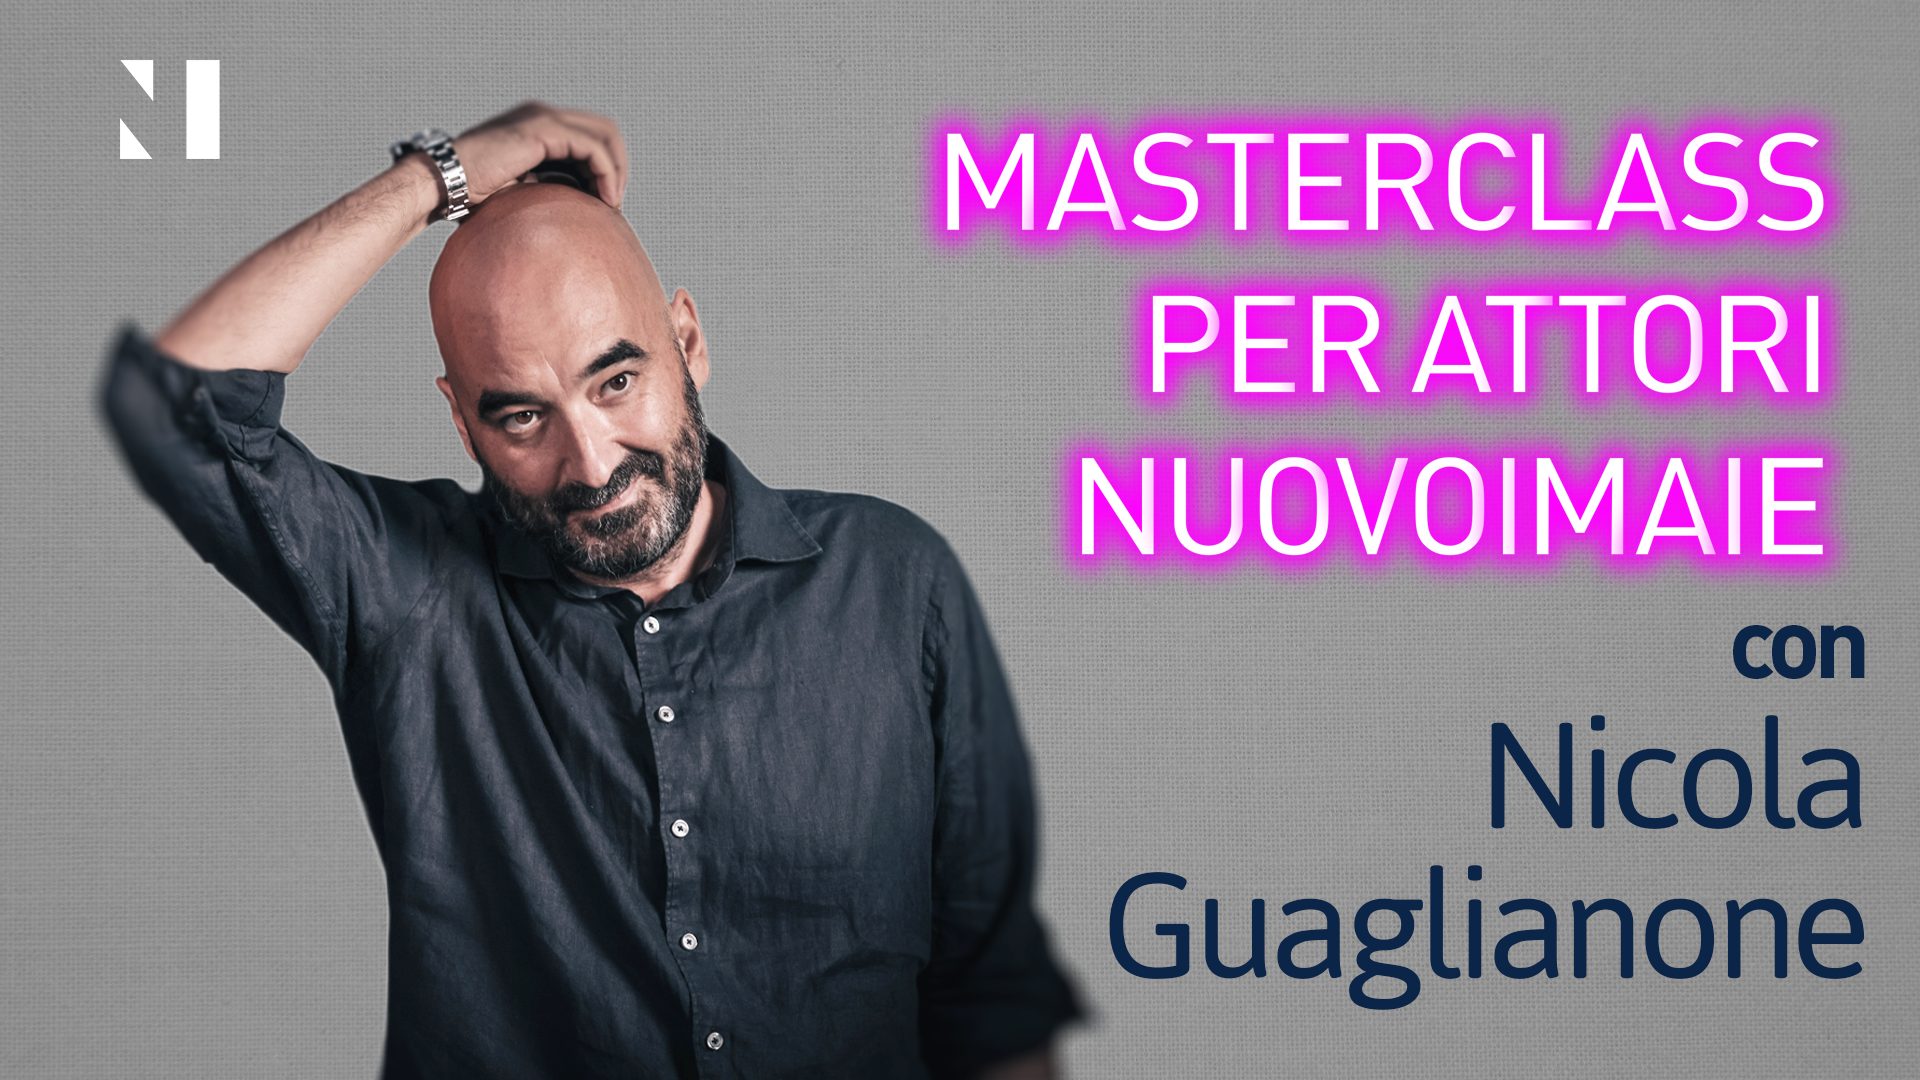 Masterclass per Attori NUOVO IMAIE con lo sceneggiatore Nicola Guaglianone